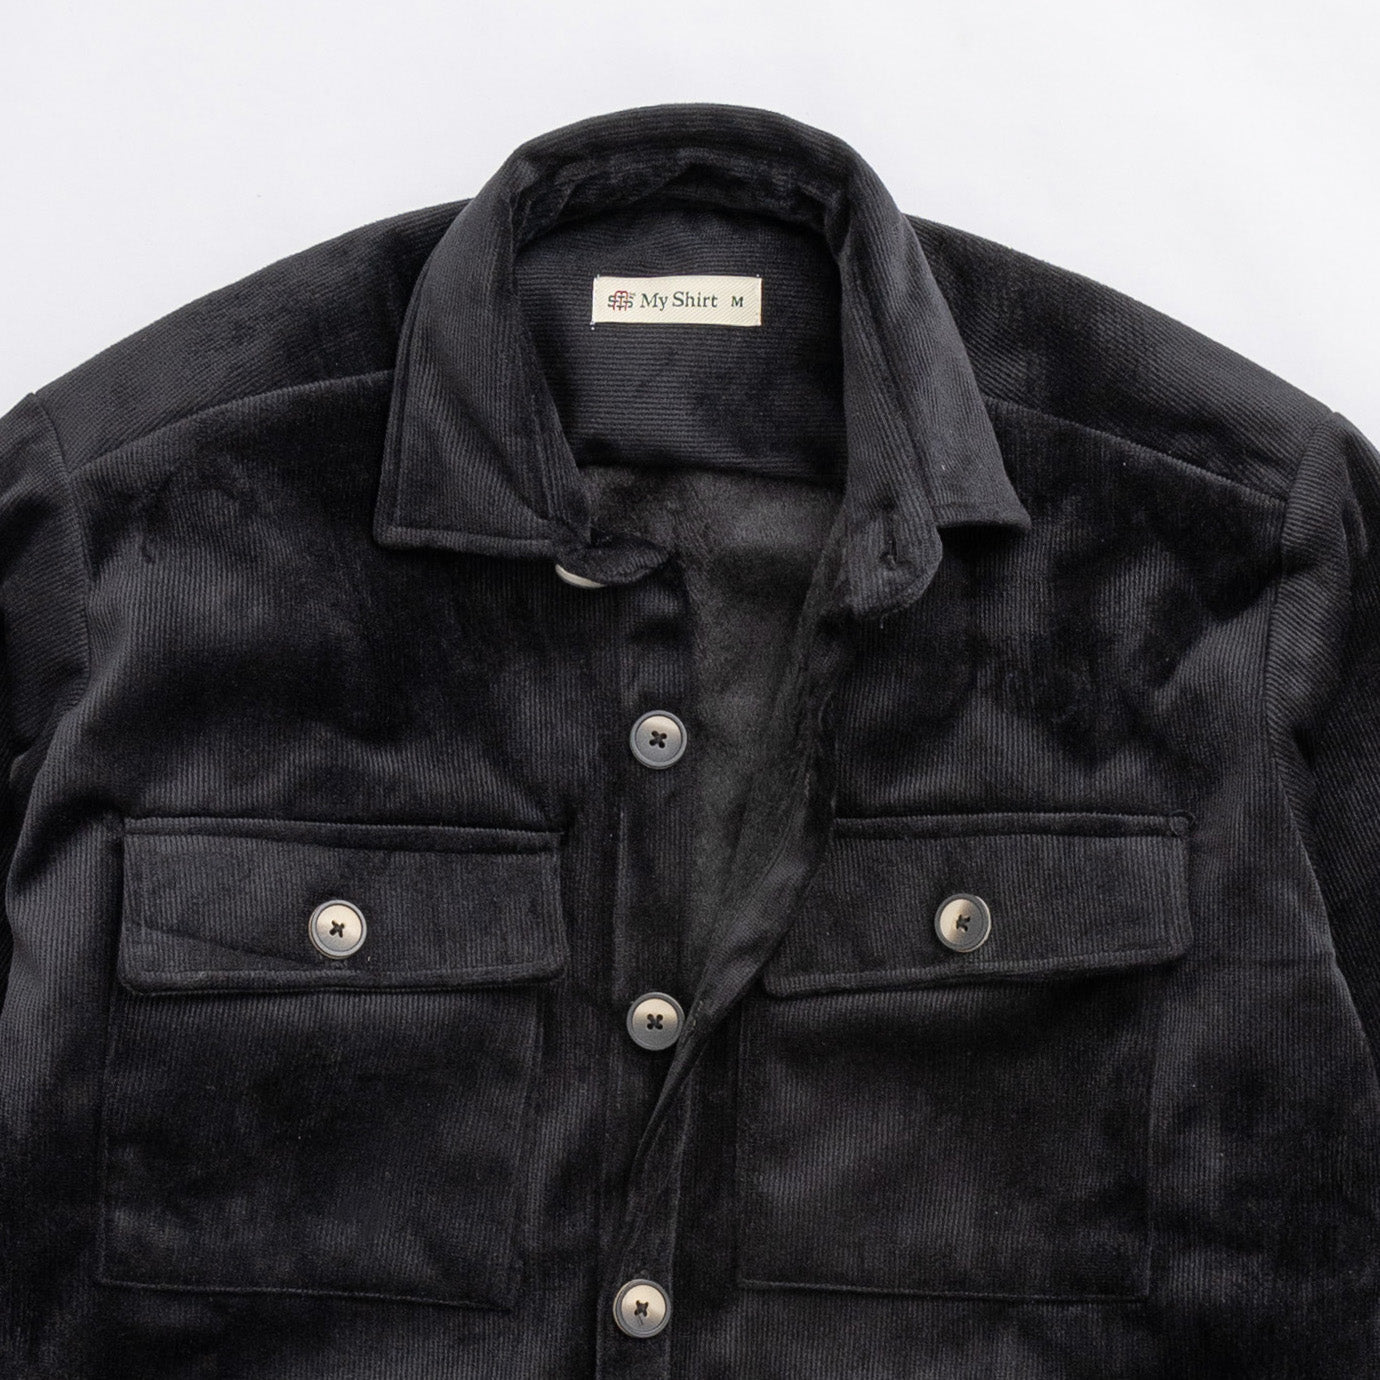 Black fur lined plain velvet shirt